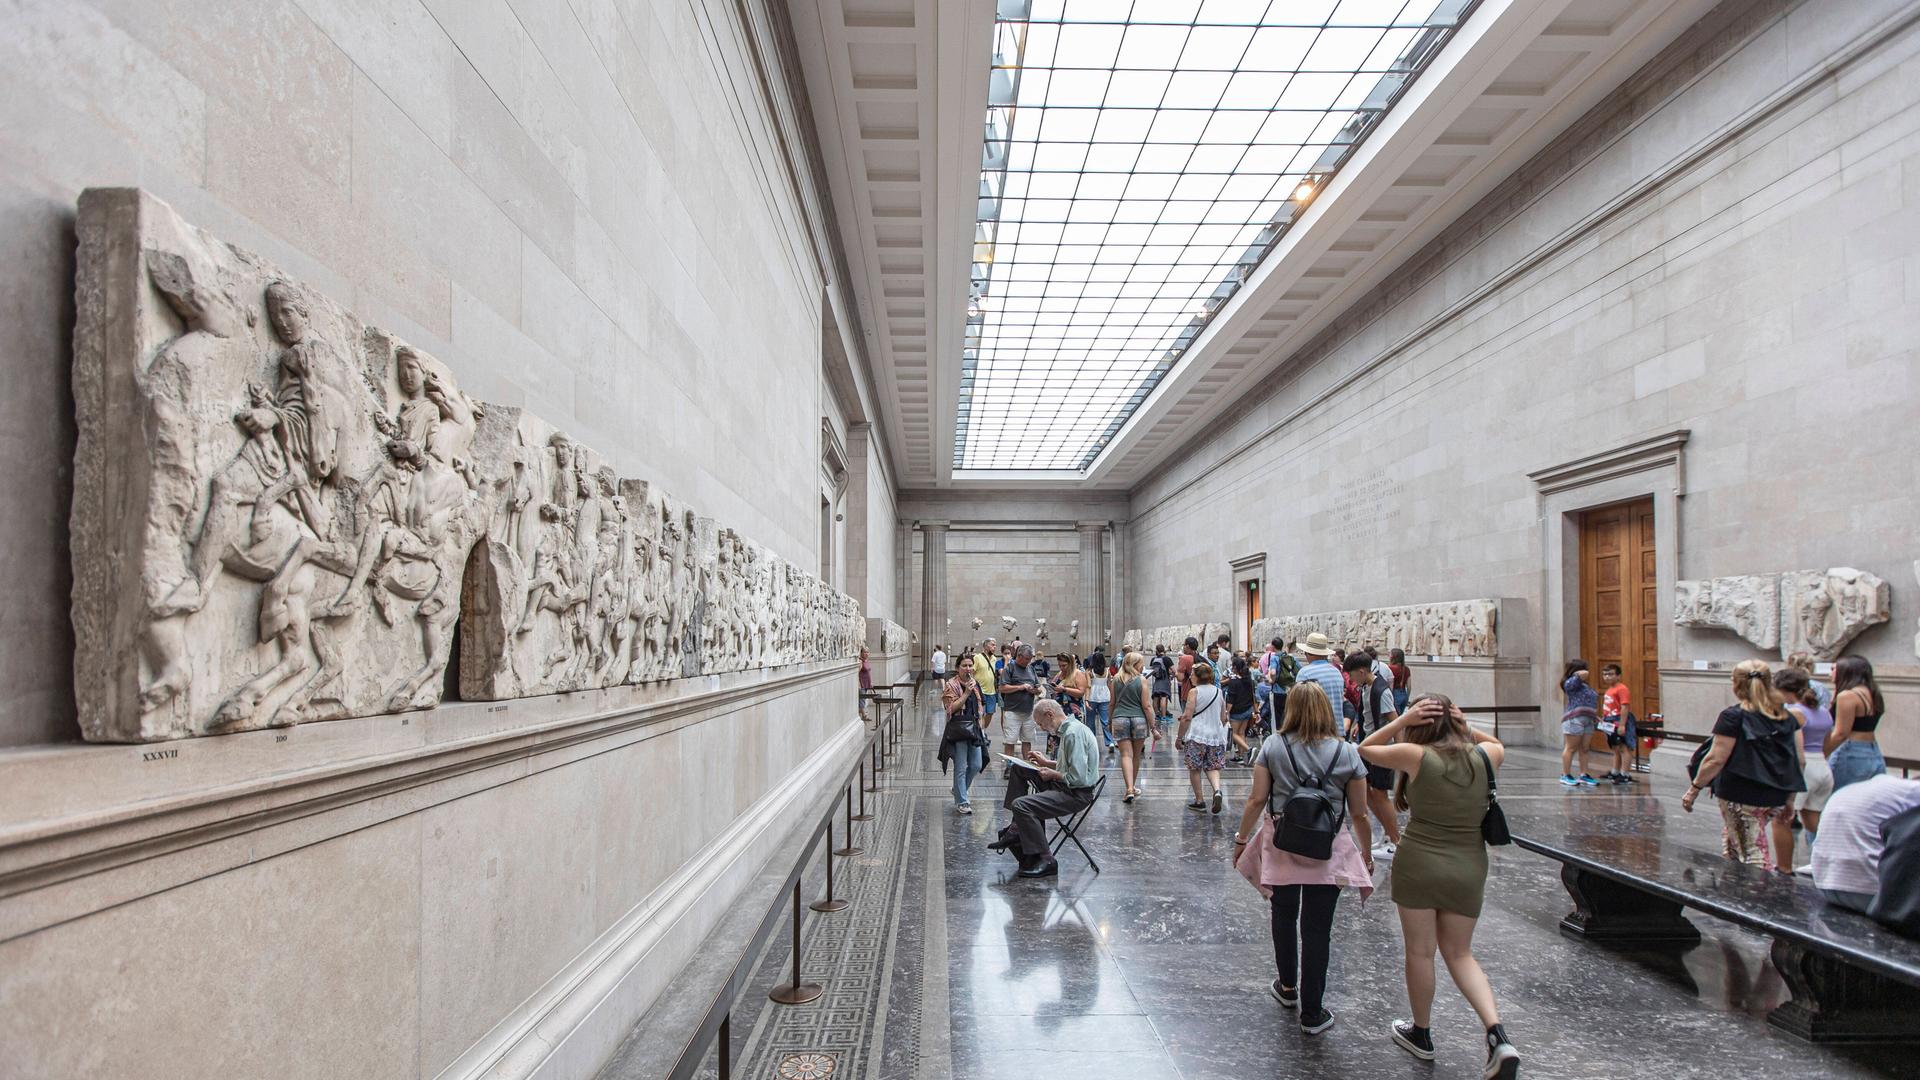 Ausstellungssaal im British Museum in London mit den sogenannten "Elgin Marbles" mit Teilen des griechischen Parthenon-Frieses